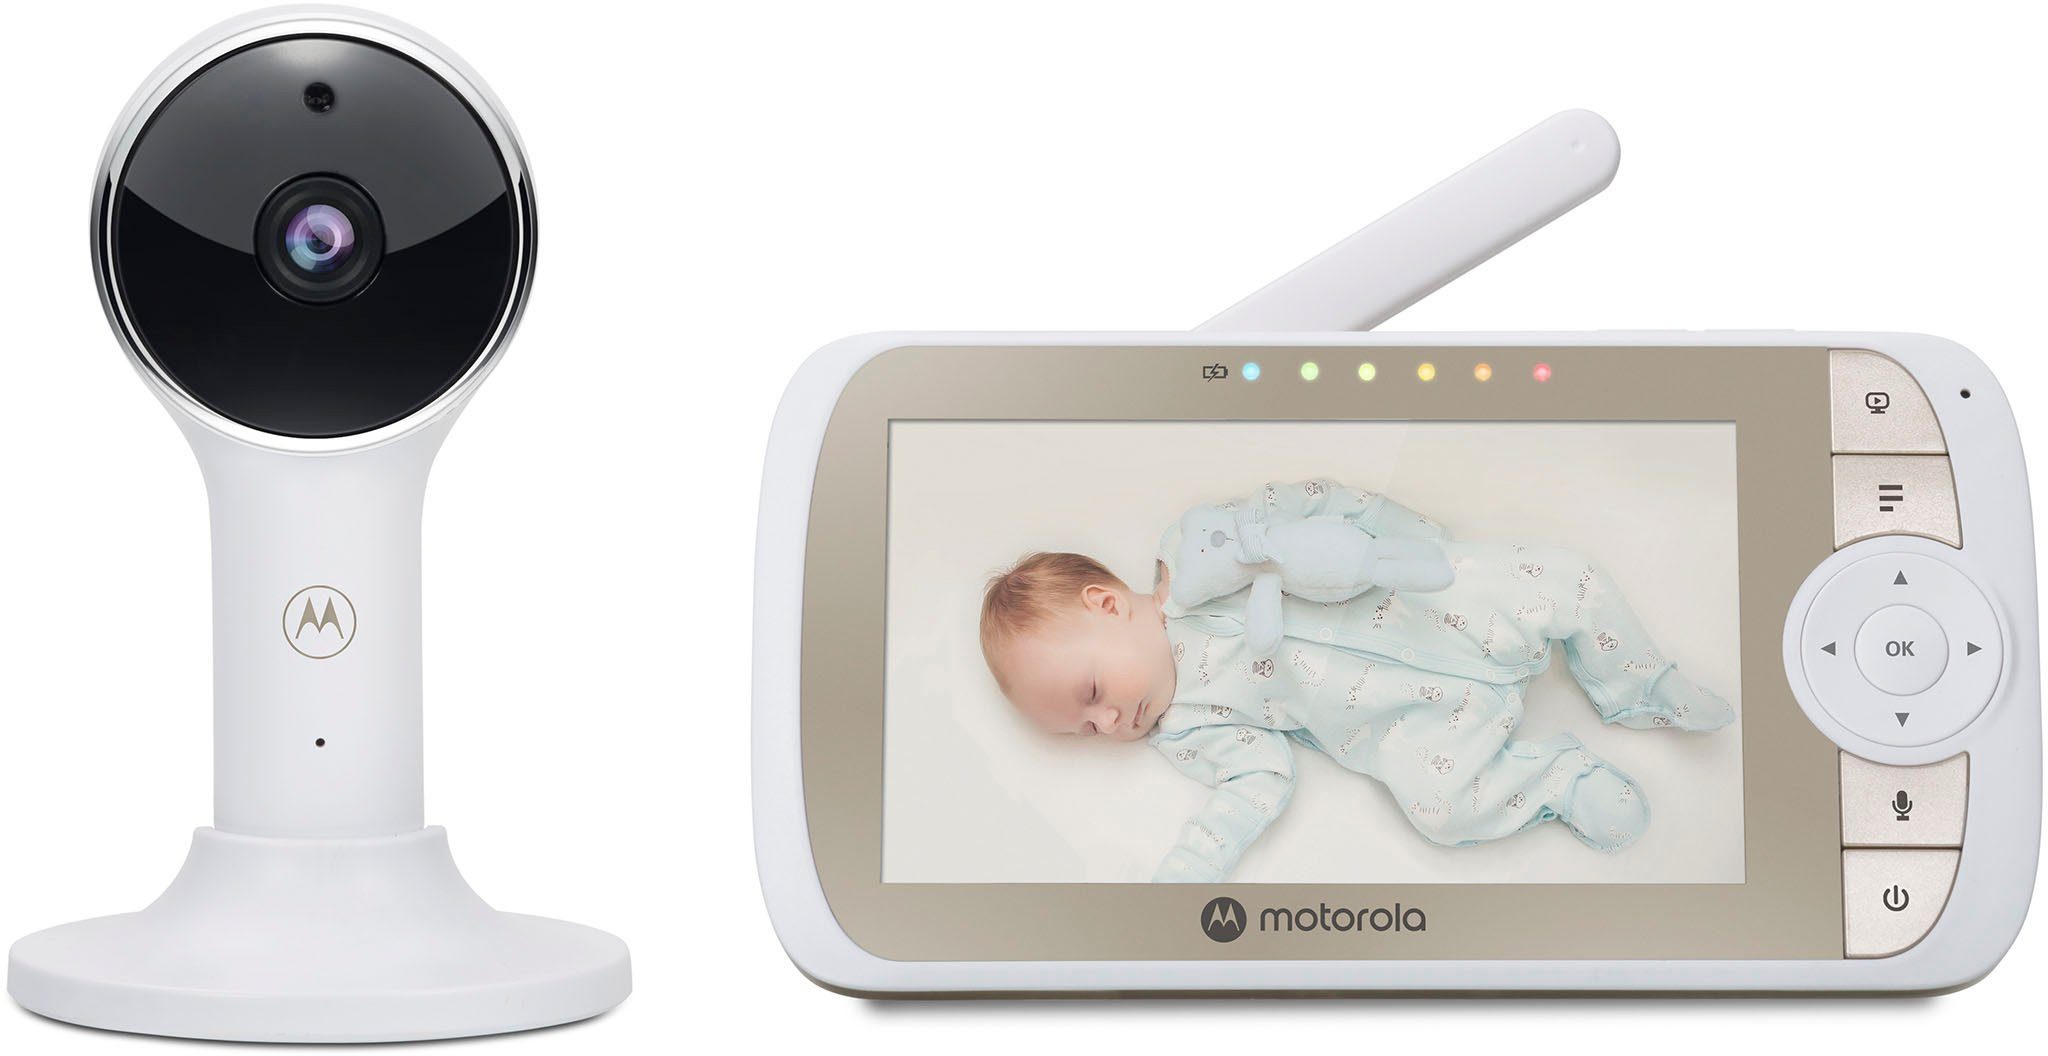 Video mit Krippenhalterung Nursery WiFi, VM65X Motorola Babyphone Connect